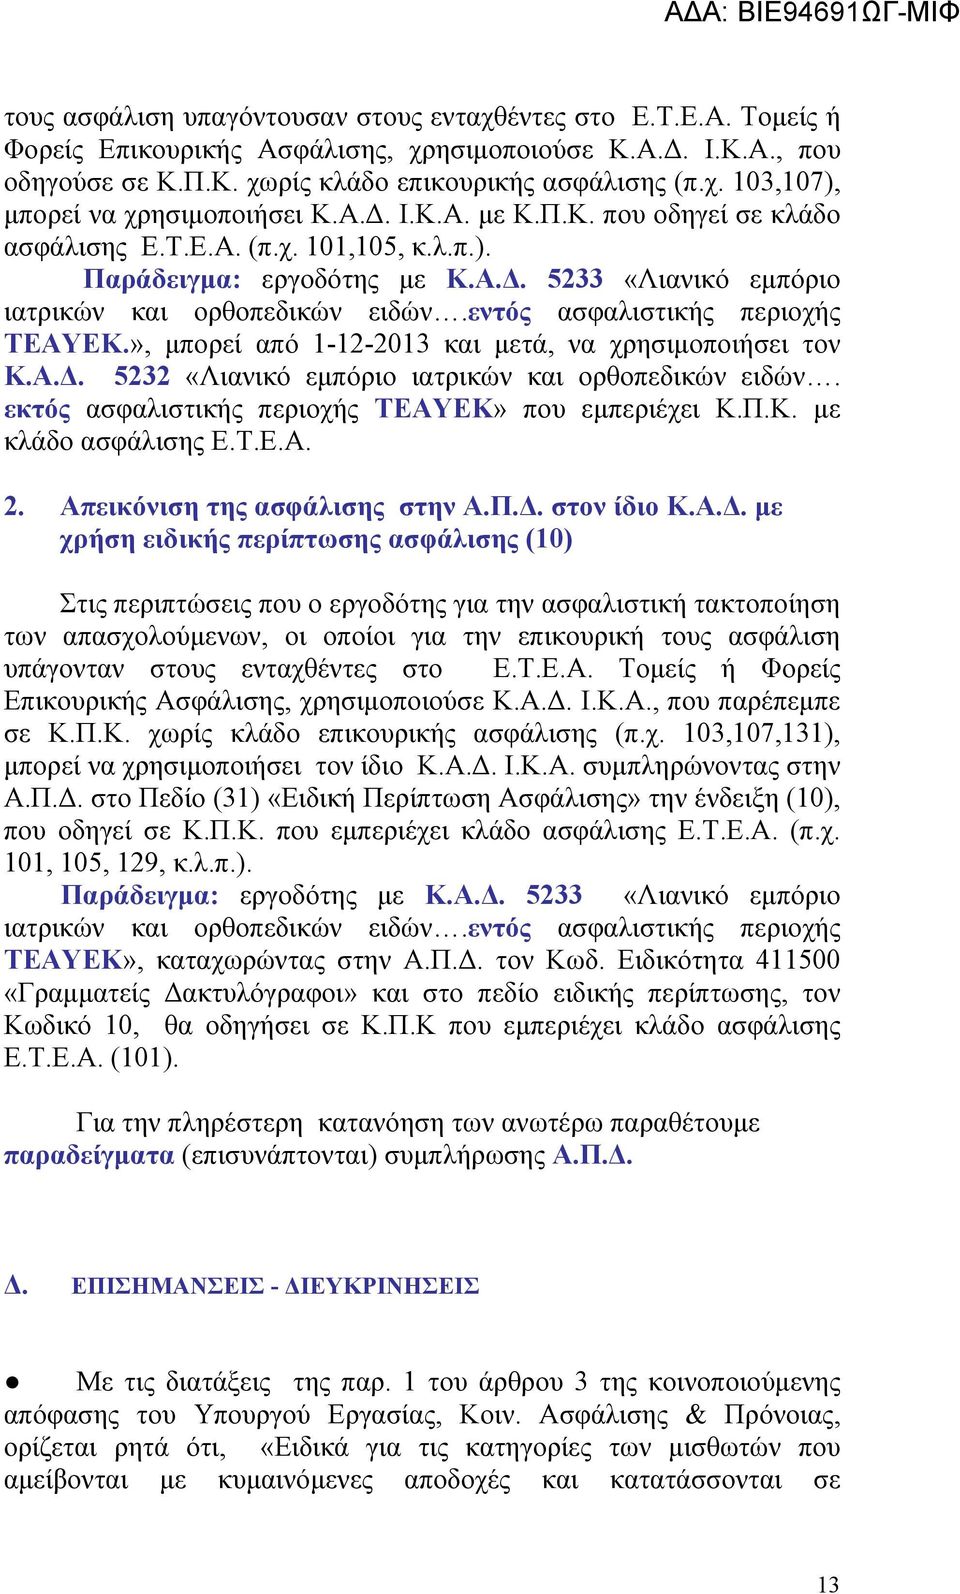 εντός ασφαλιστικής περιοχής ΤΕΑΥΕΚ.», μπορεί από 1-12-2013 και μετά, να χρησιμοποιήσει τον Κ.Α.Δ. 5232 «Λιανικό εμπόριο ιατρικών και ορθοπεδικών ειδών.